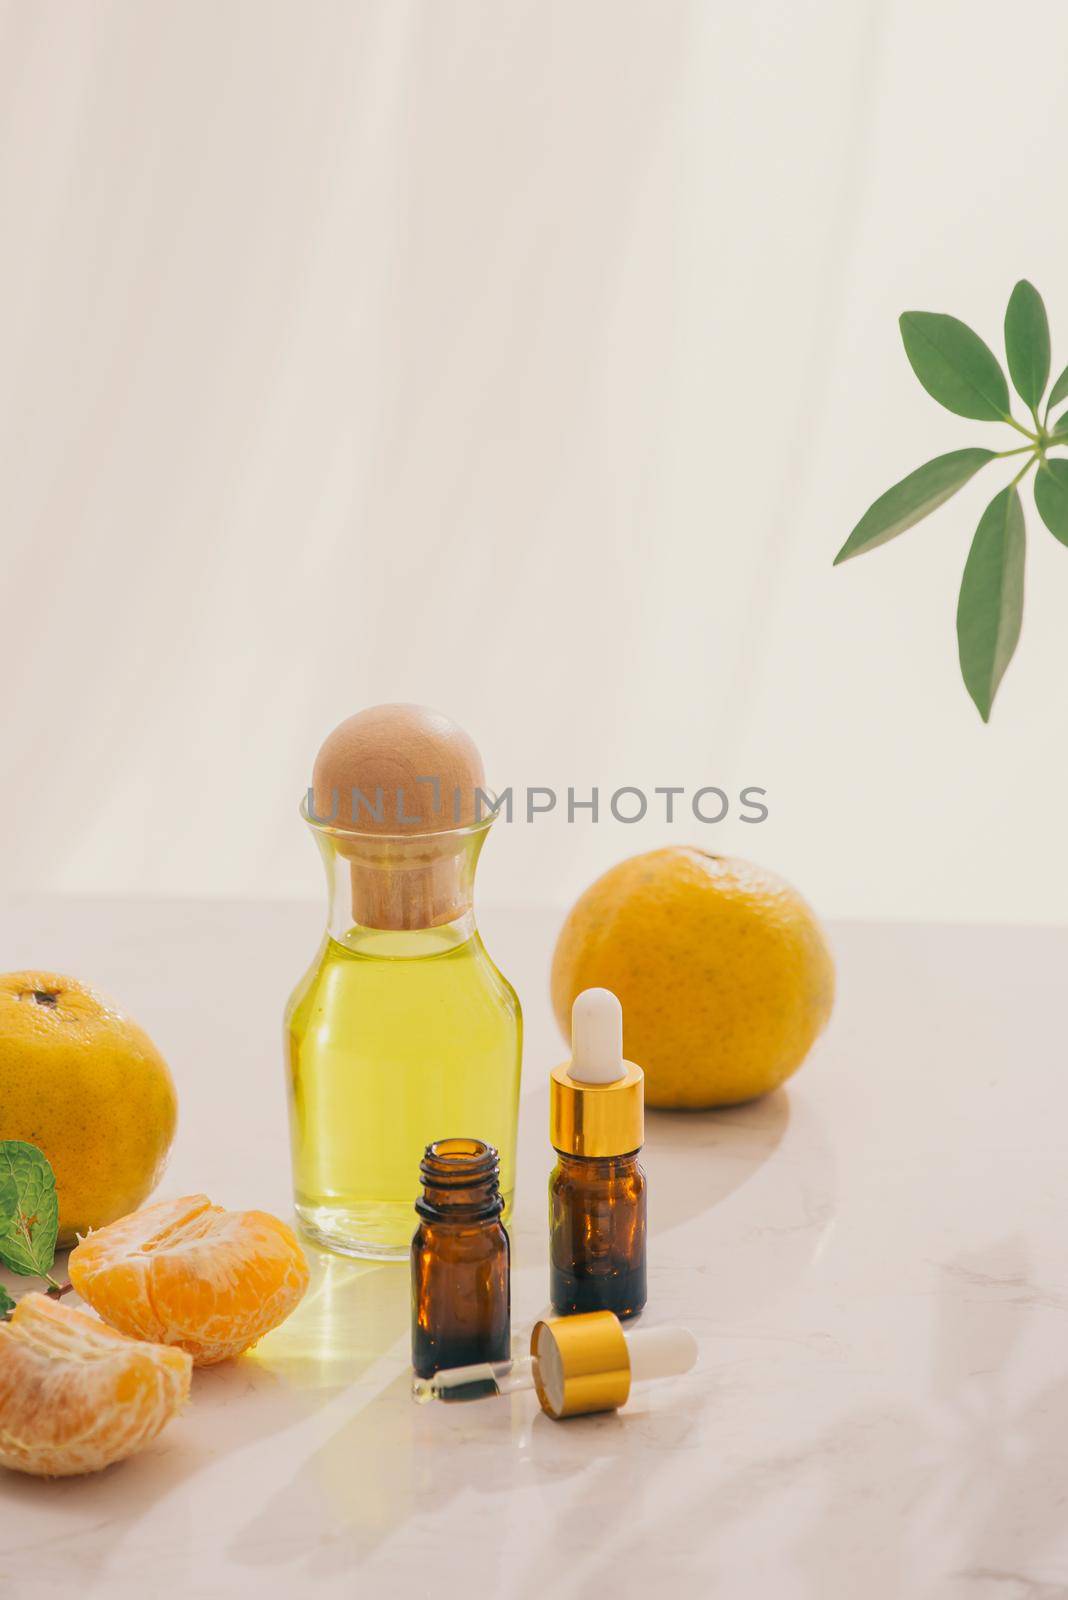 Tangerine oil on table on light background